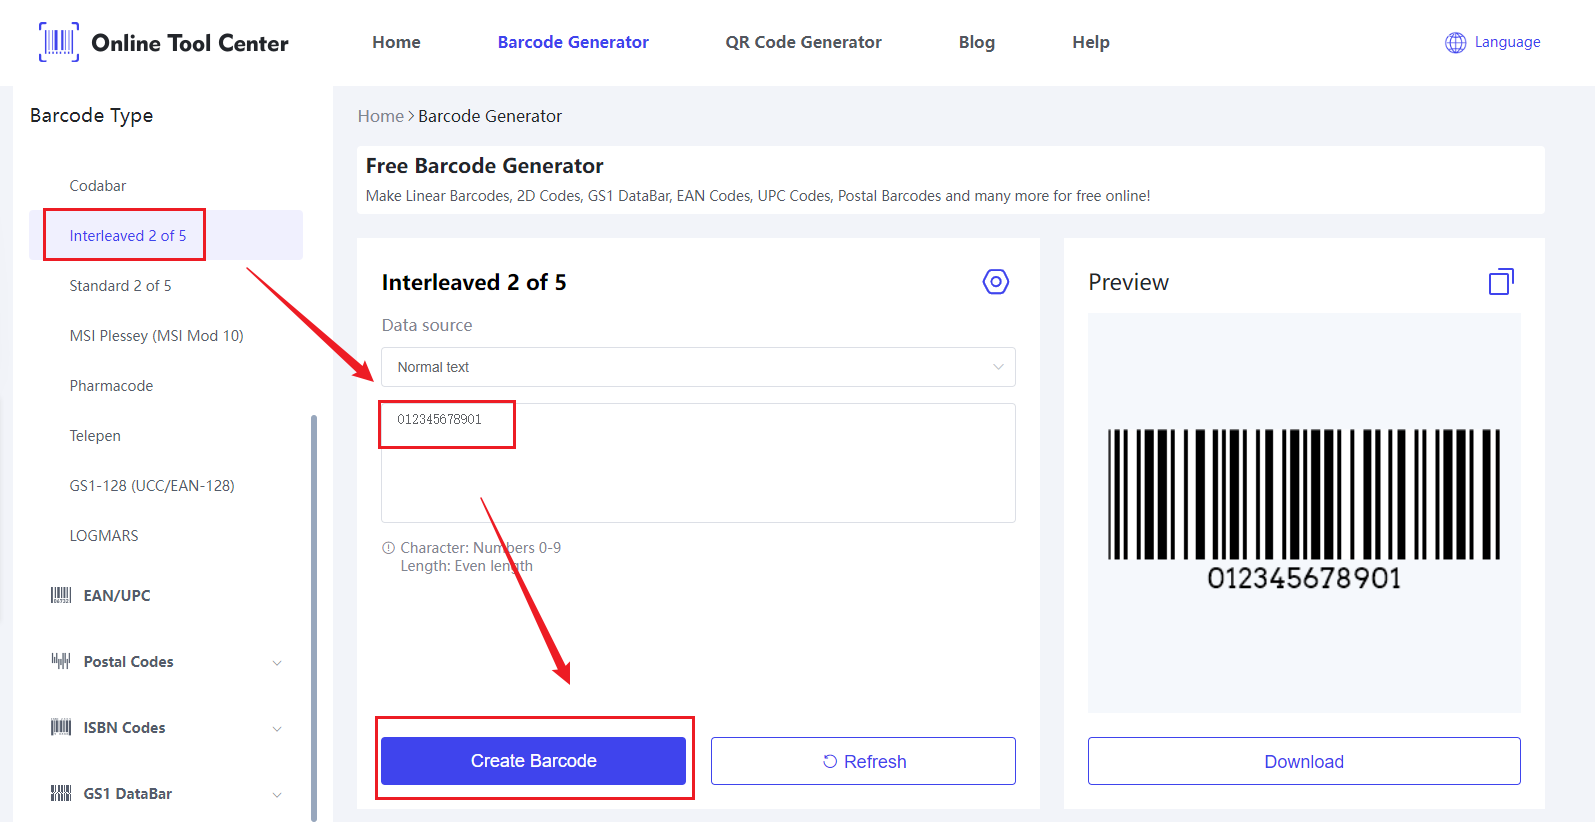 Brugere, der downloadede Barcode Generator.png downloadede også: